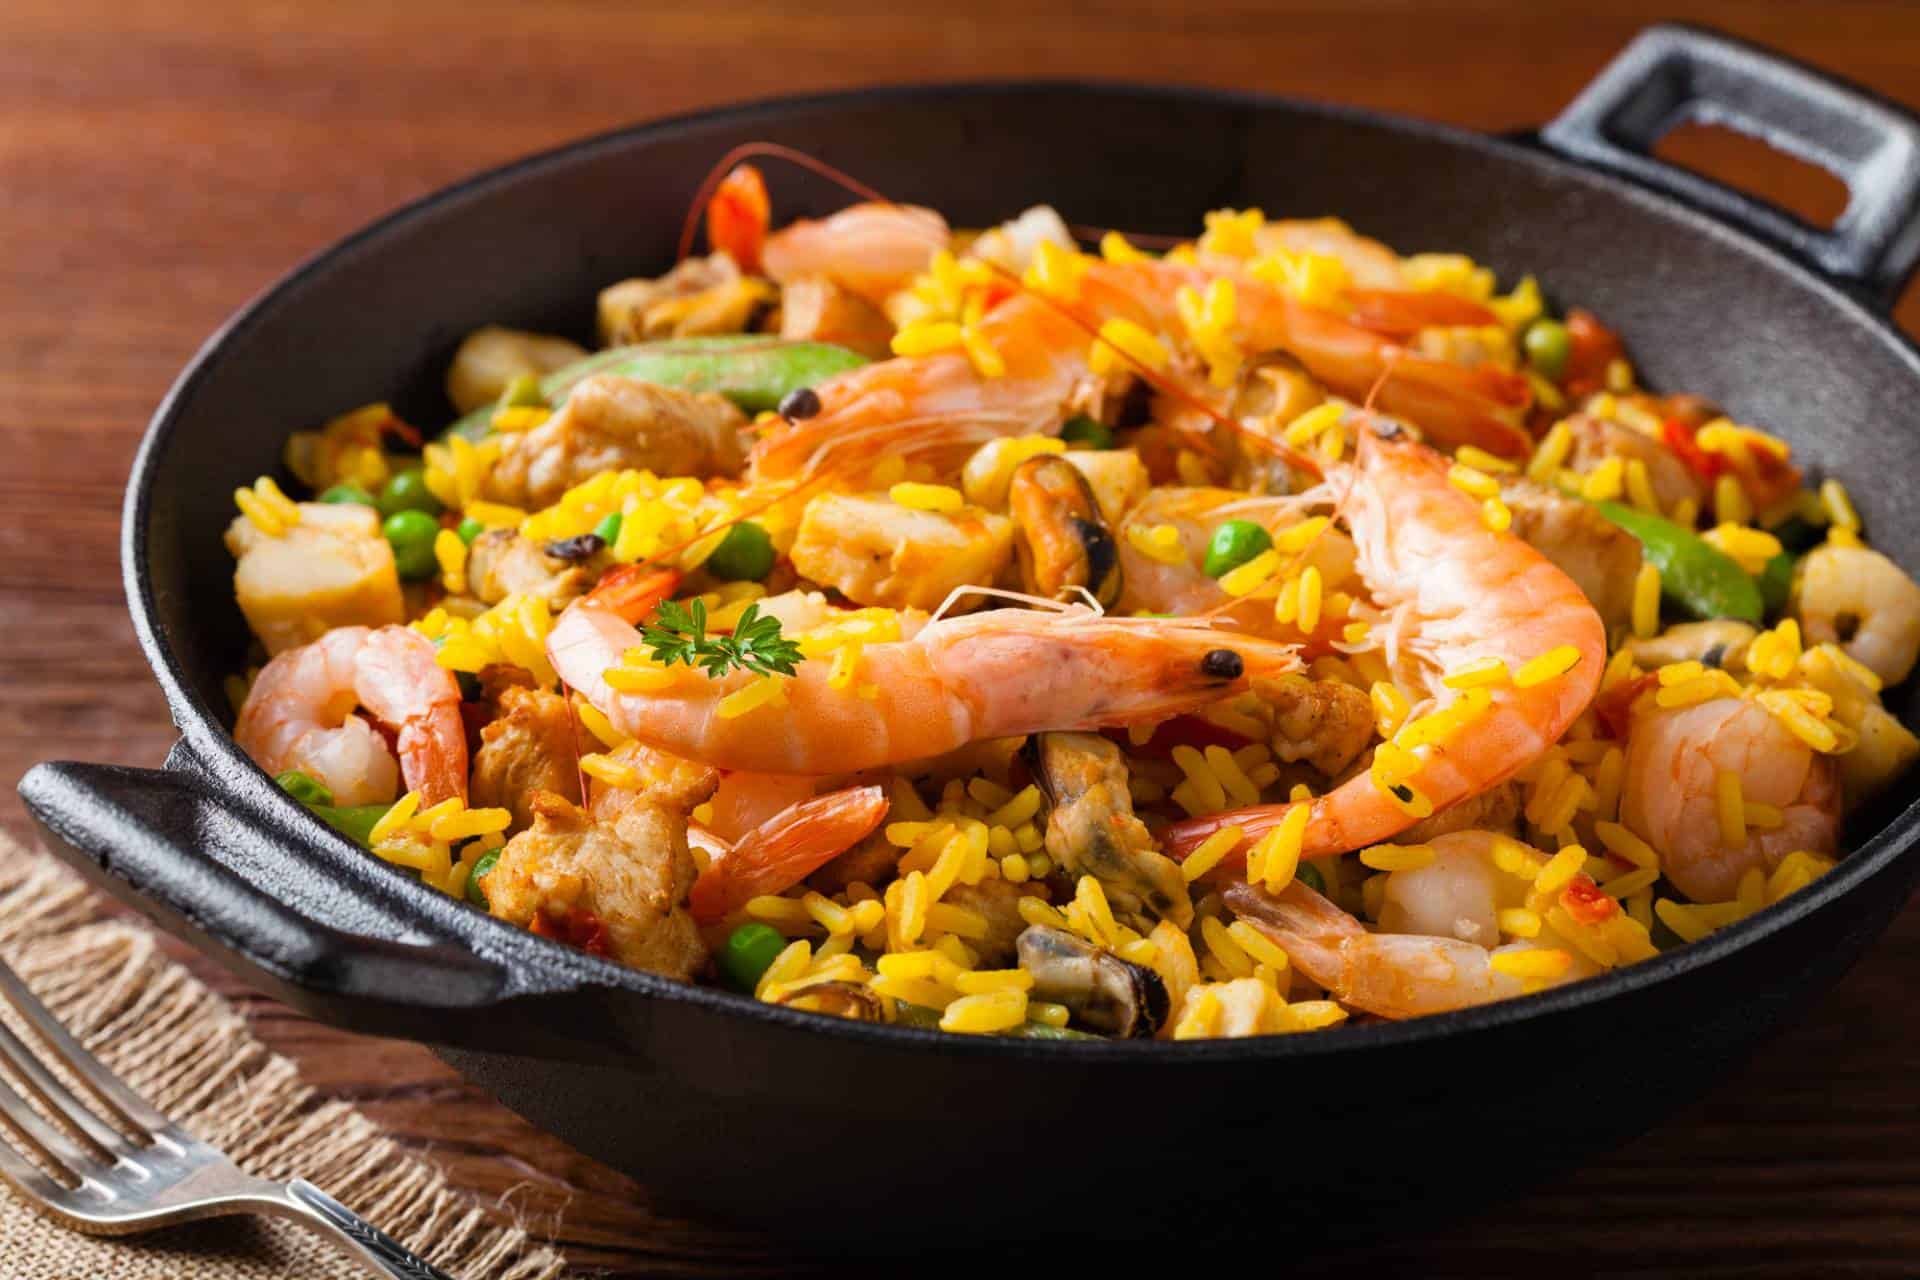 What’s the best Spanish paella recipe?